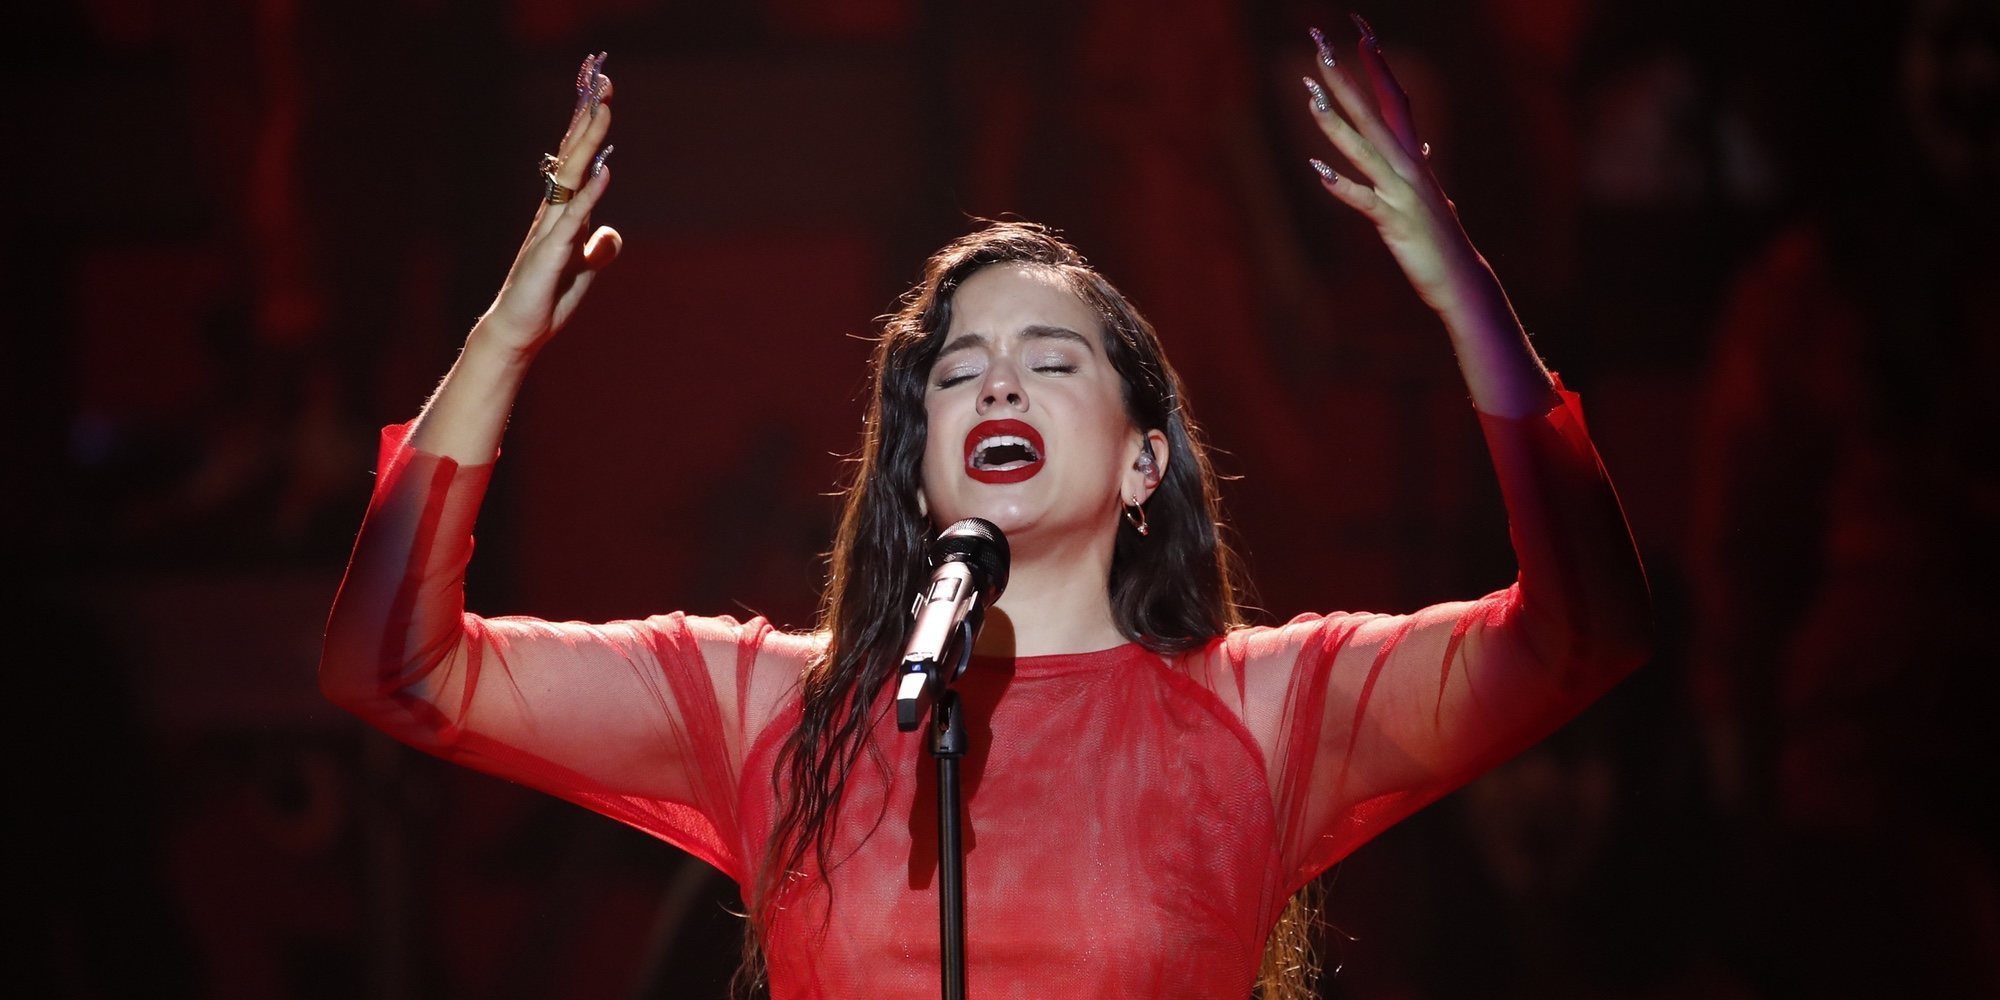 Rosalía vuelve a sorprender cantando en catalán su nuevo single 'Fucking Money Man'